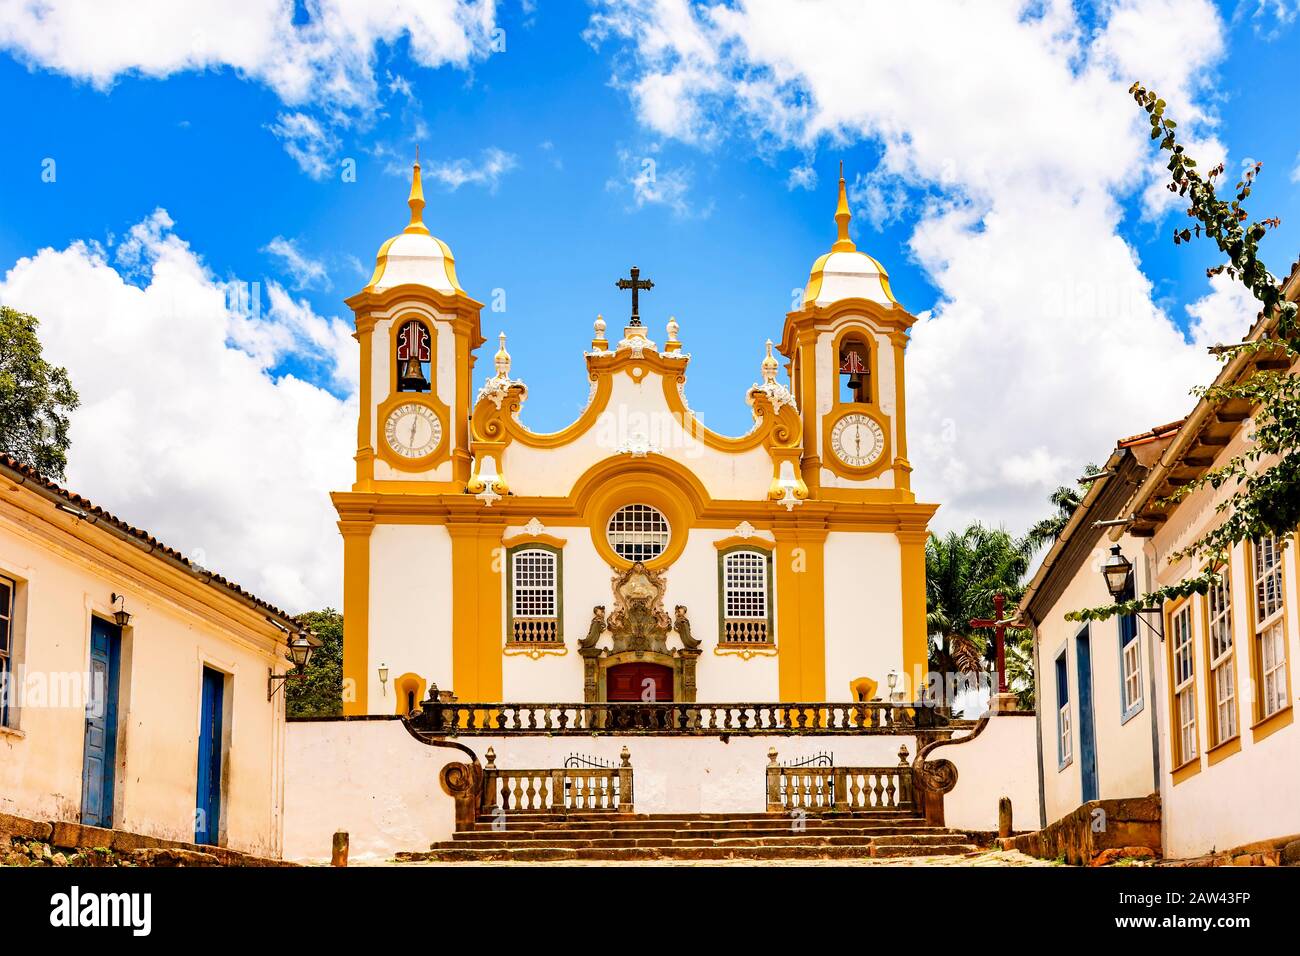 Fachada de una antigua iglesia construida en el siglo XVIII en estilo barroco en la ciudad de Tiradentes, Minas Gerais Foto de stock